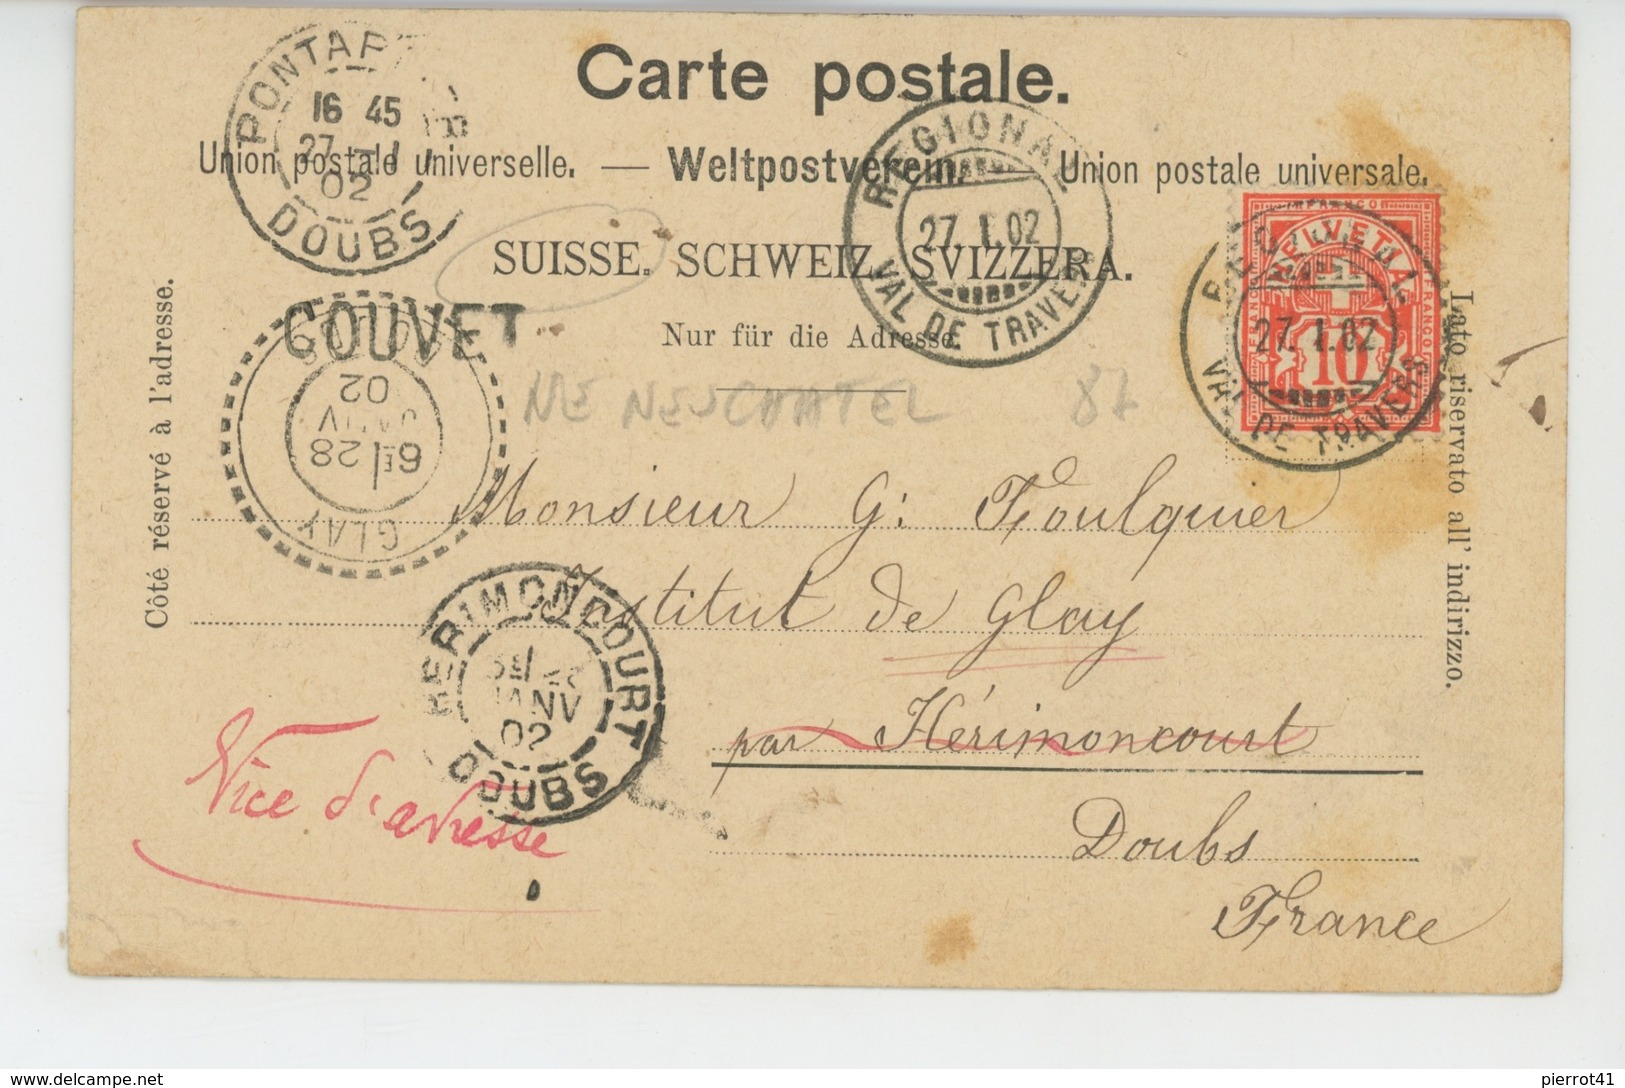 SUISSE - NEUCHATEL - Souvenir De COUVET - Hôtel De L'Aigle (1902) - Couvet